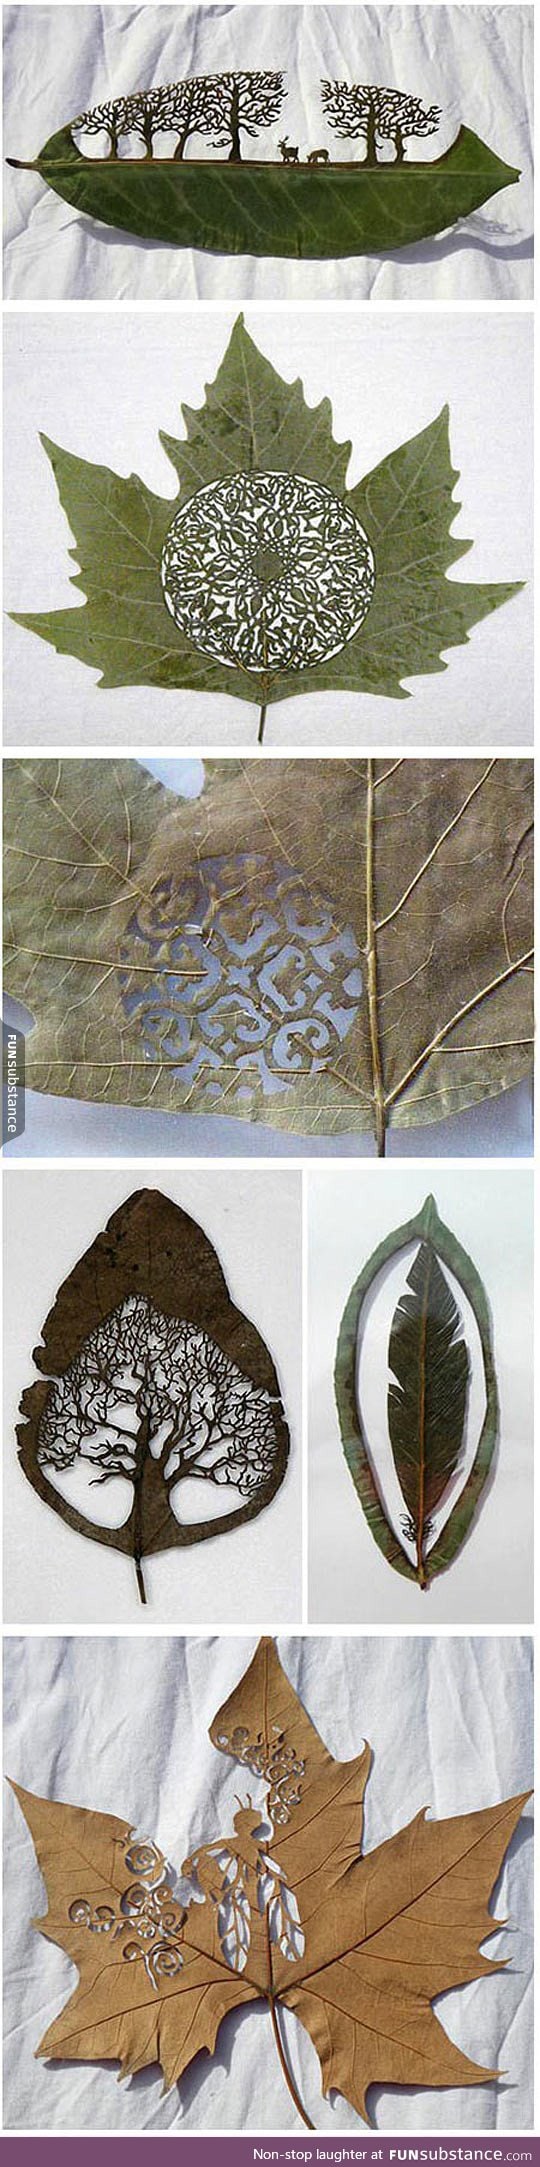 True art in a leaf